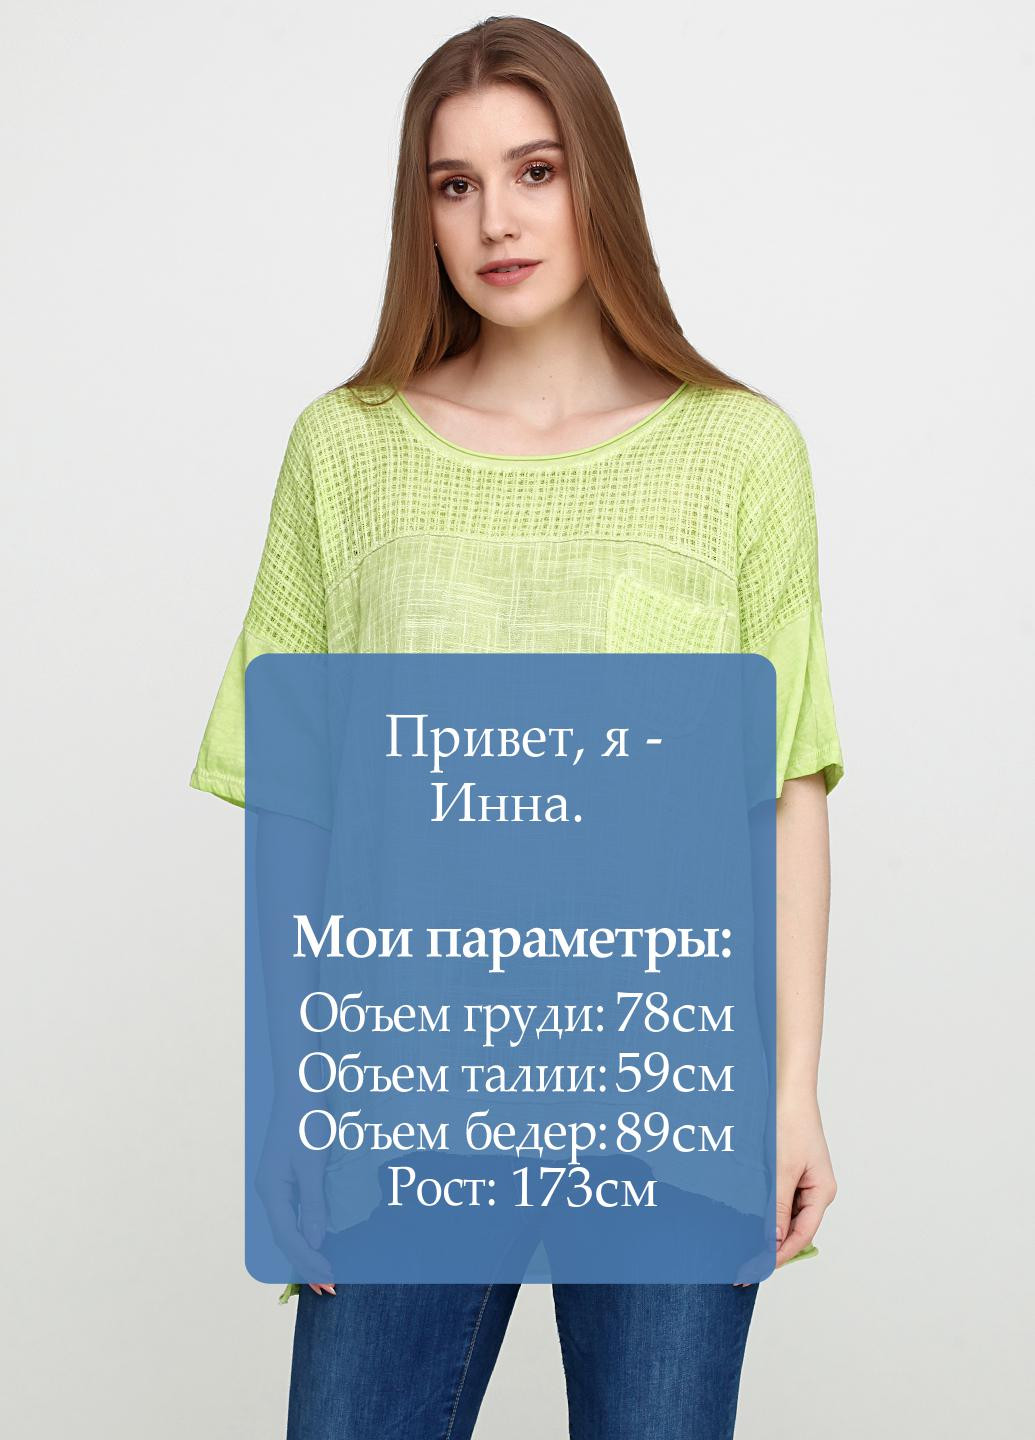 Салатова літня блуза New Collection